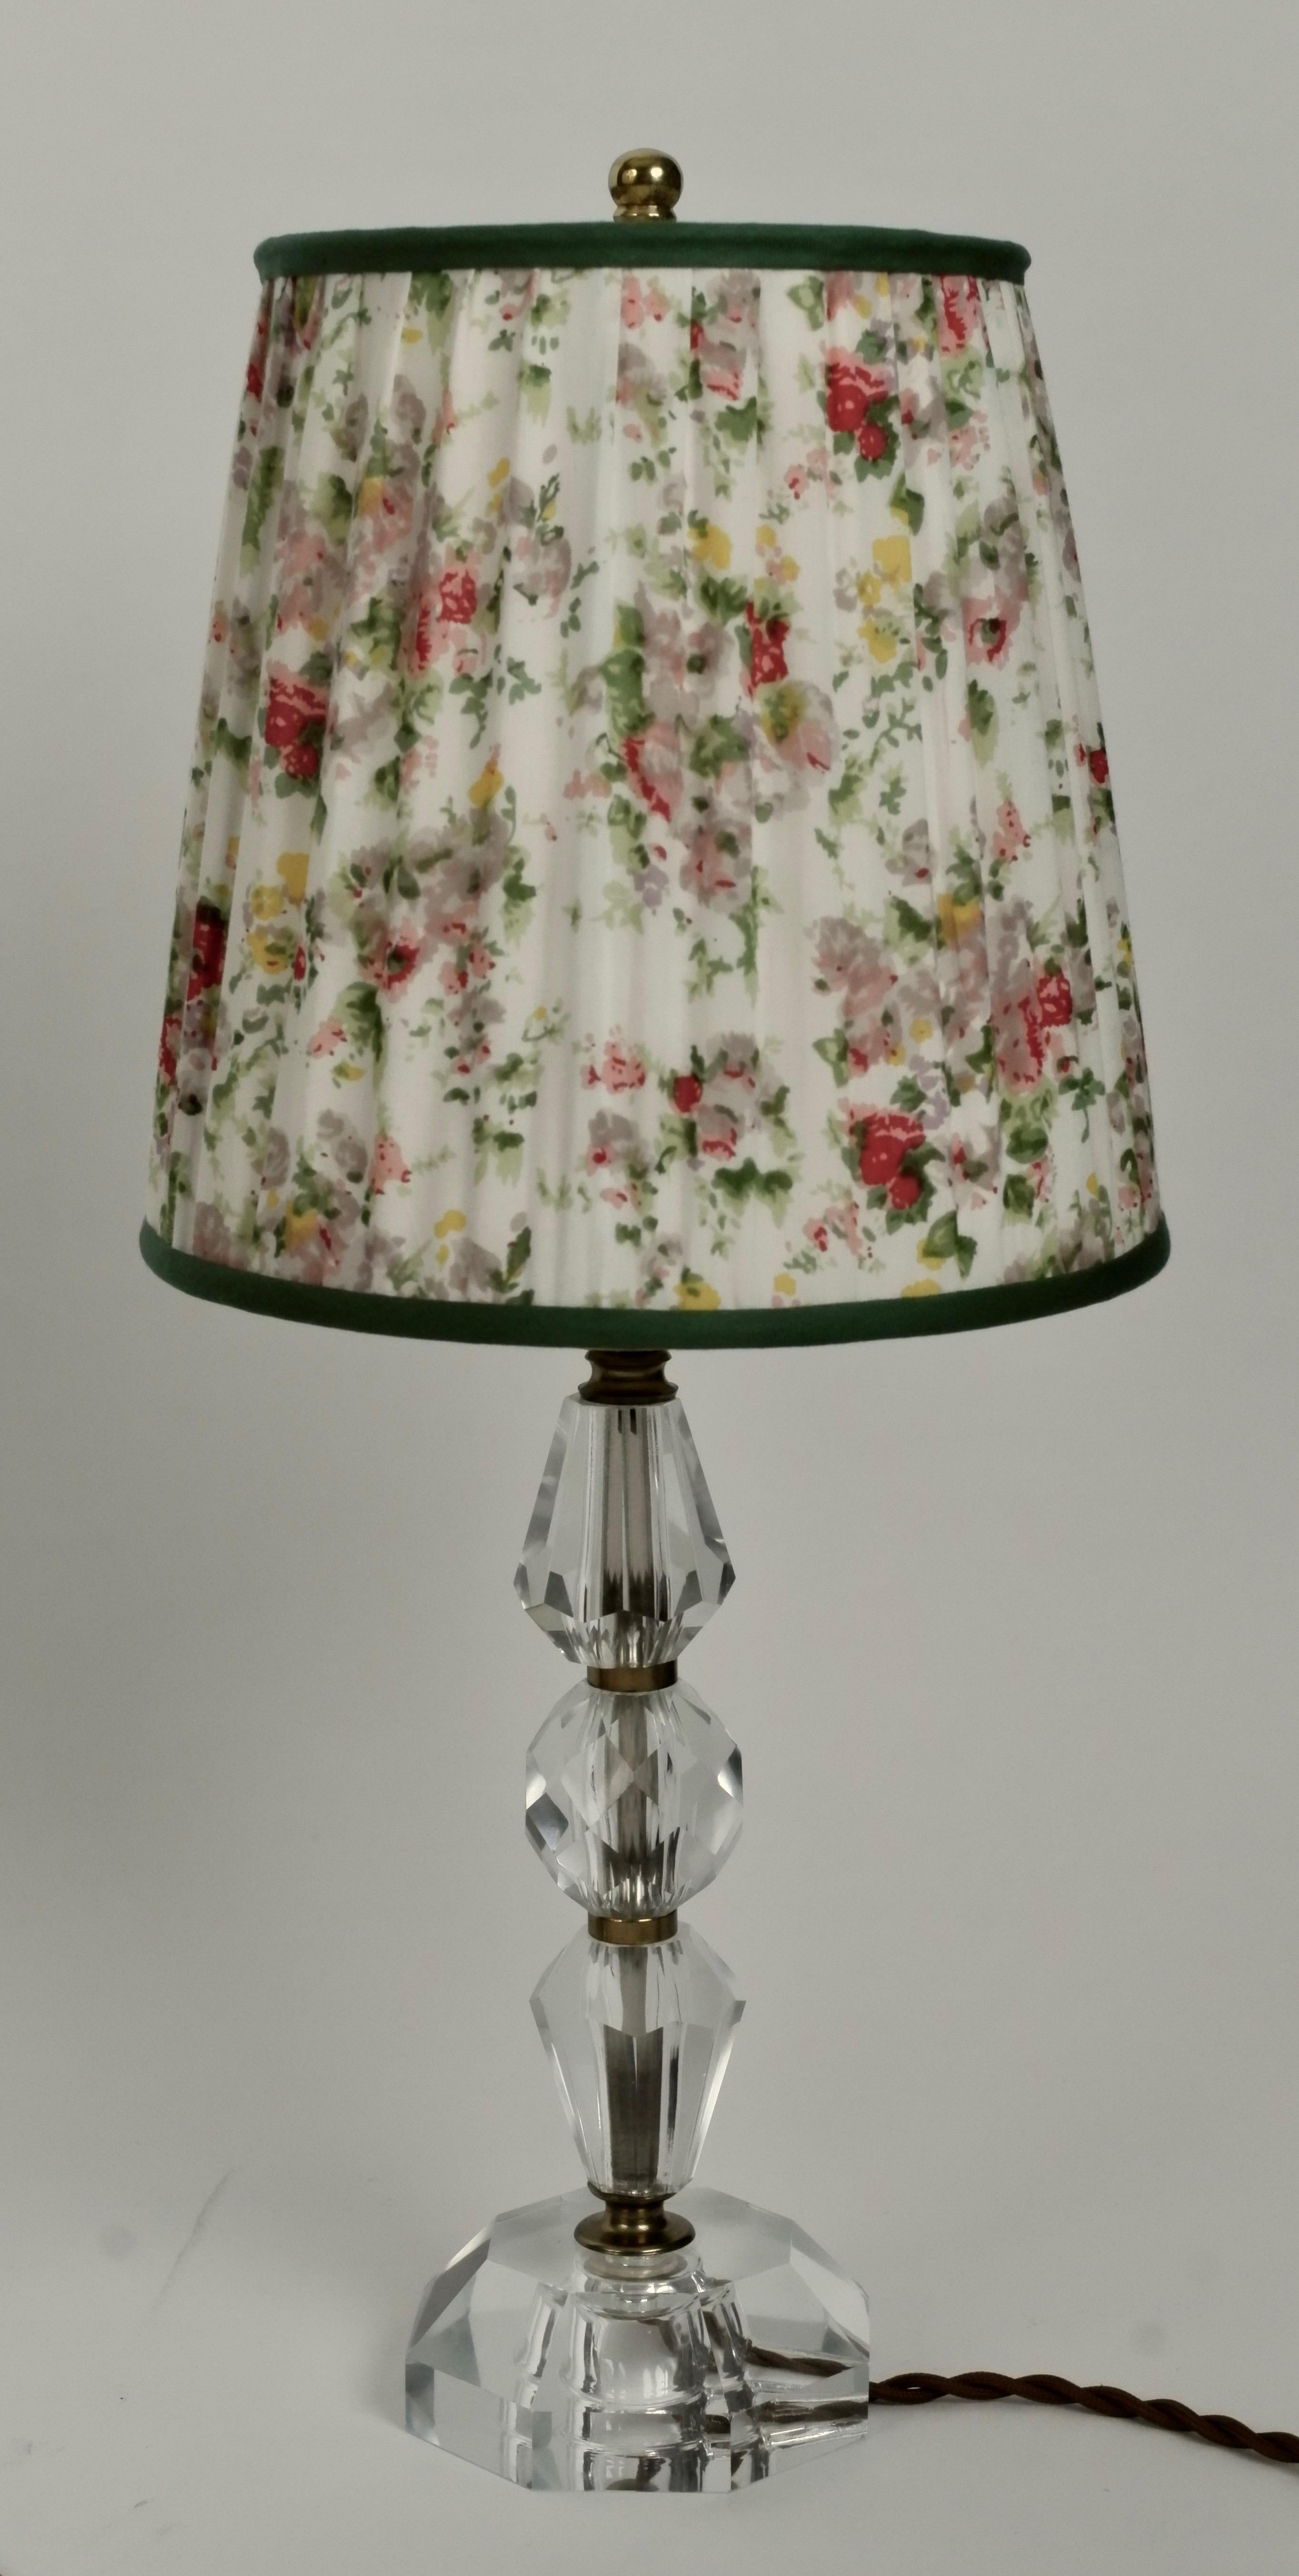 Eine schöne Lampe aus geschliffenem Glas aus Frankreich. Der Schirm ist mit einem Vintage-Seidentextil bespannt, wobei der Originalrahmen verwendet wird.
Das gewebte Textilkabel bildet einen Kontrast zum Glas.